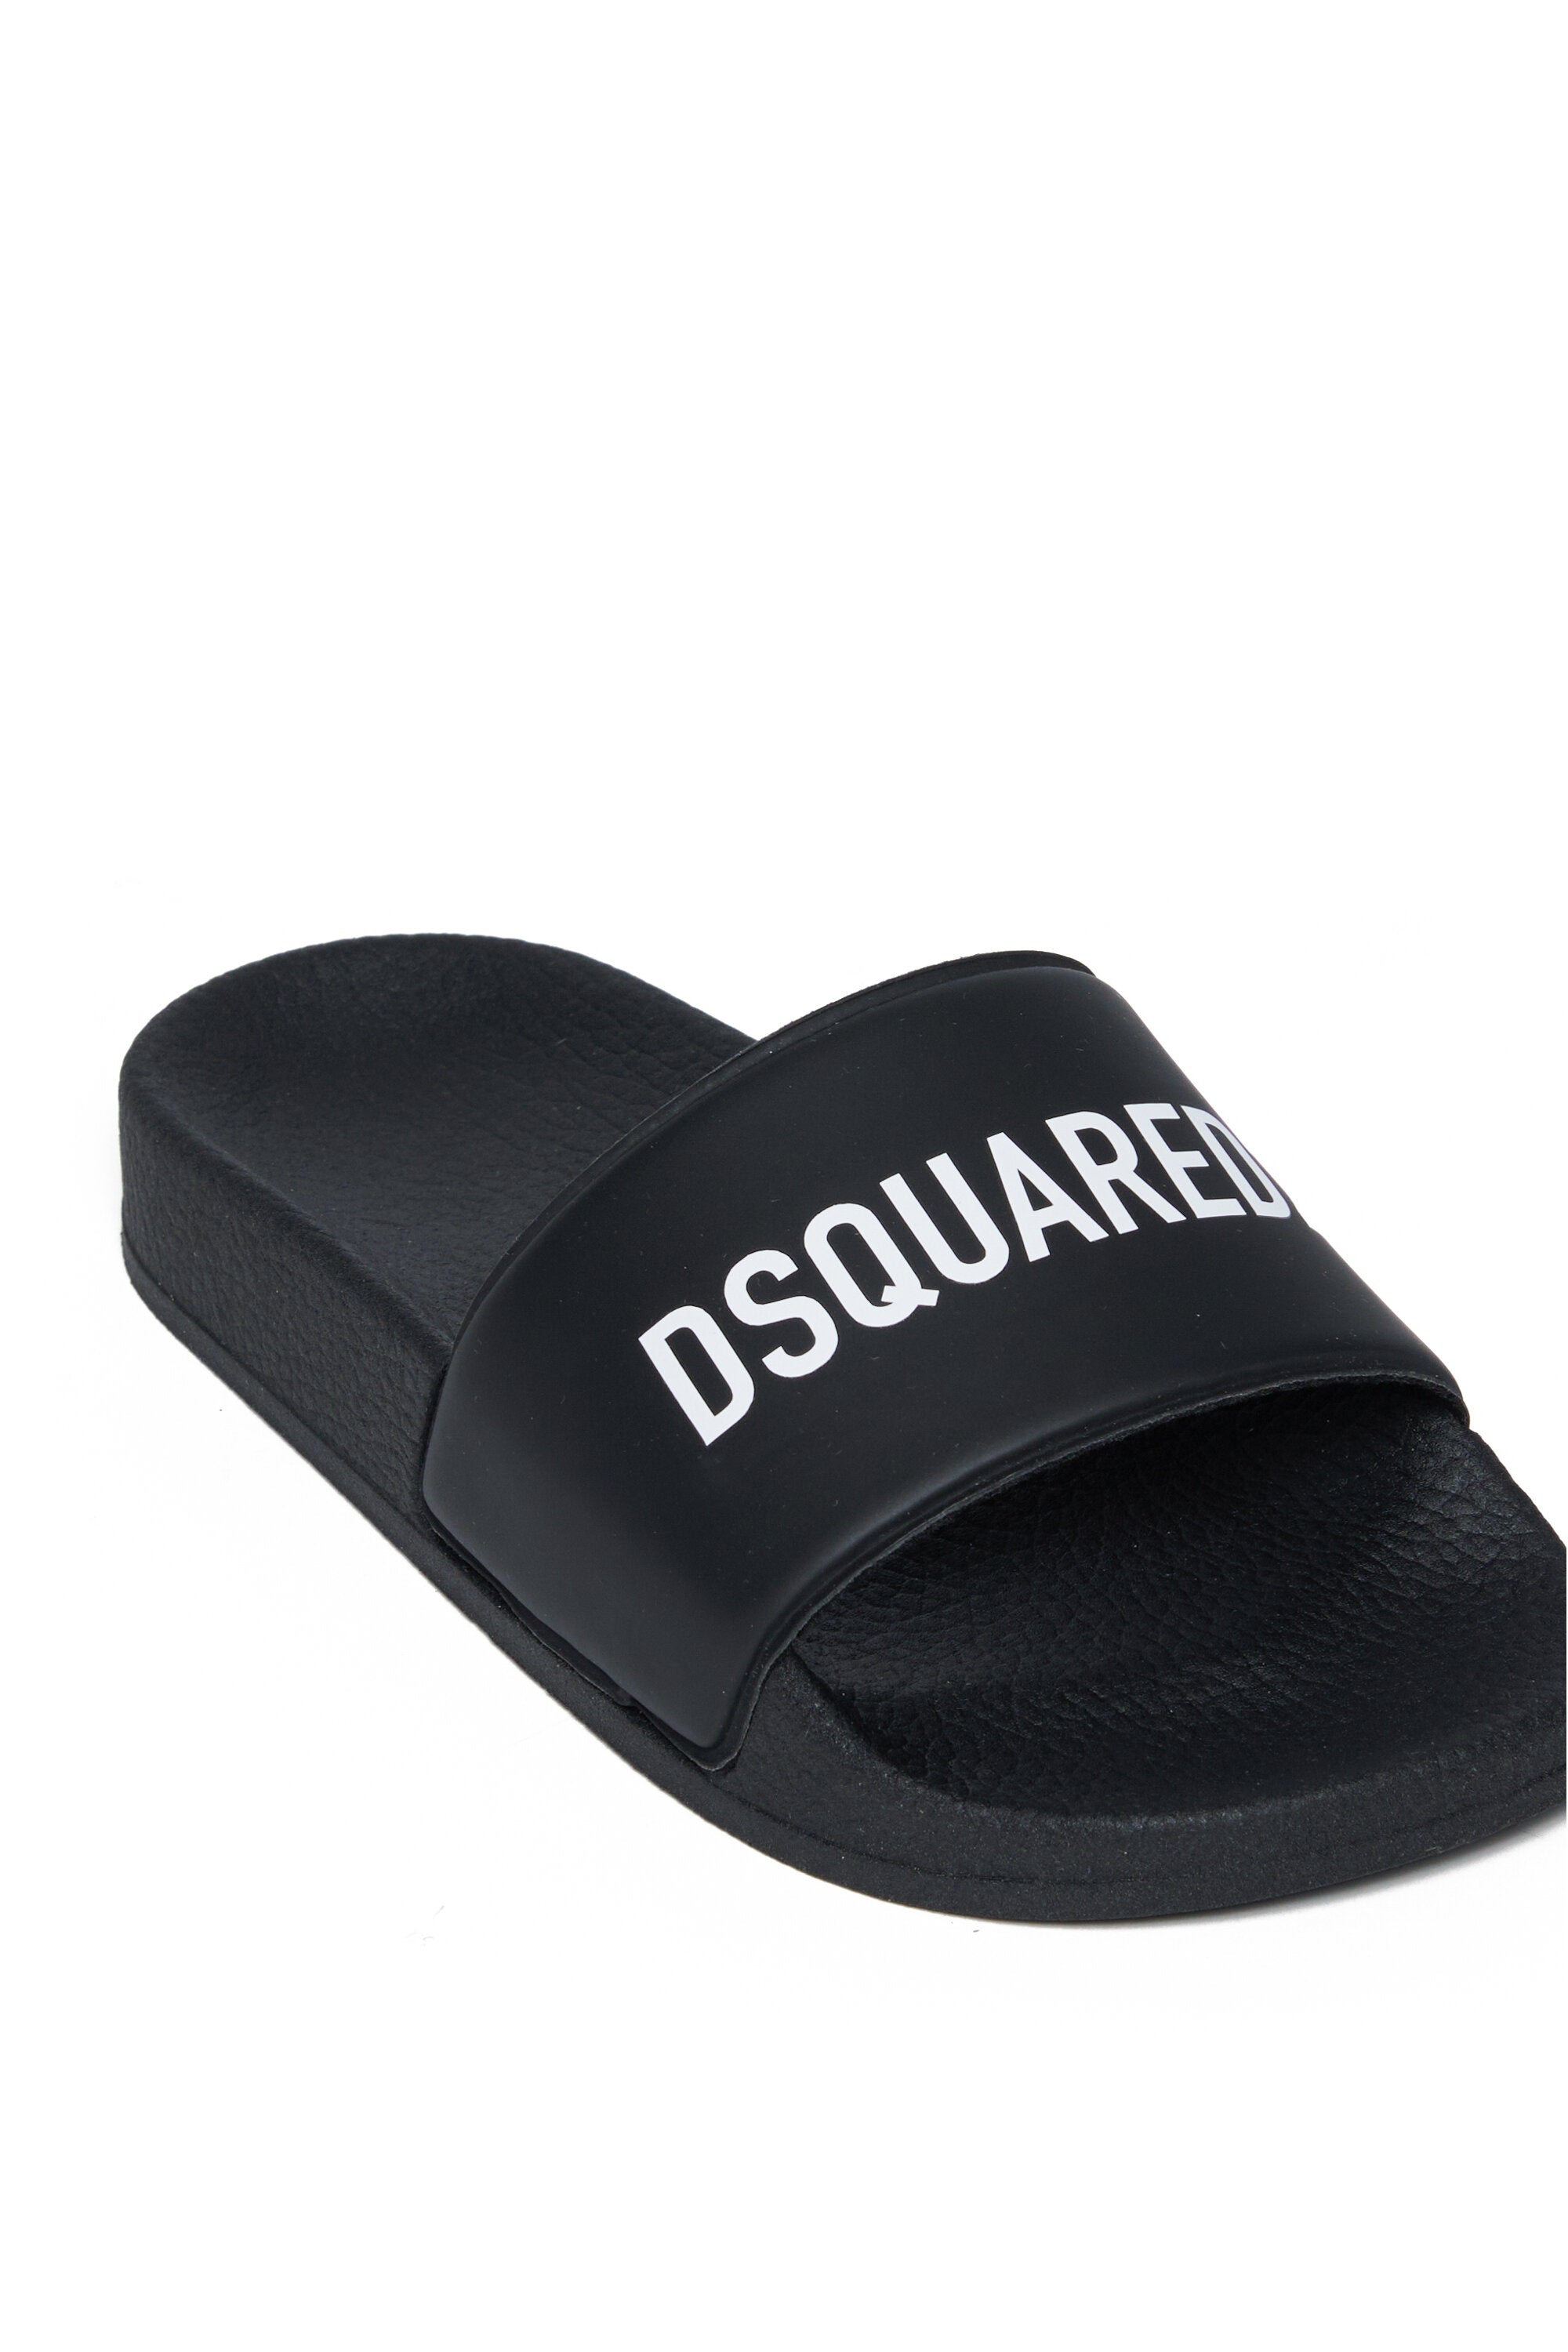 Branded slide slippers